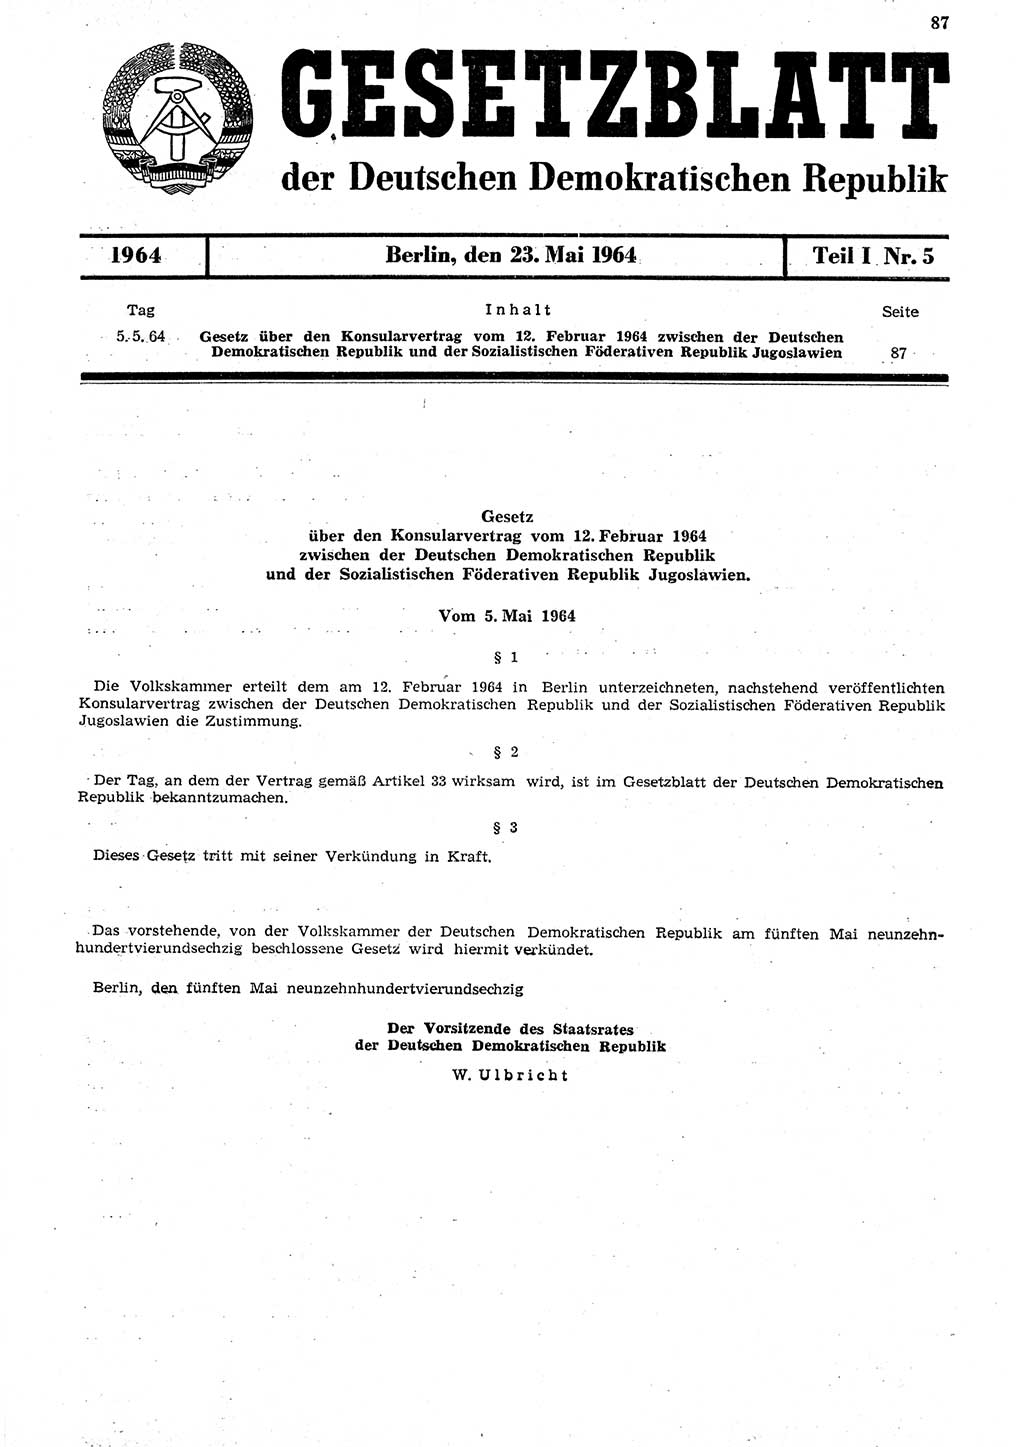 Gesetzblatt (GBl.) der Deutschen Demokratischen Republik (DDR) Teil Ⅰ 1964, Seite 87 (GBl. DDR Ⅰ 1964, S. 87)